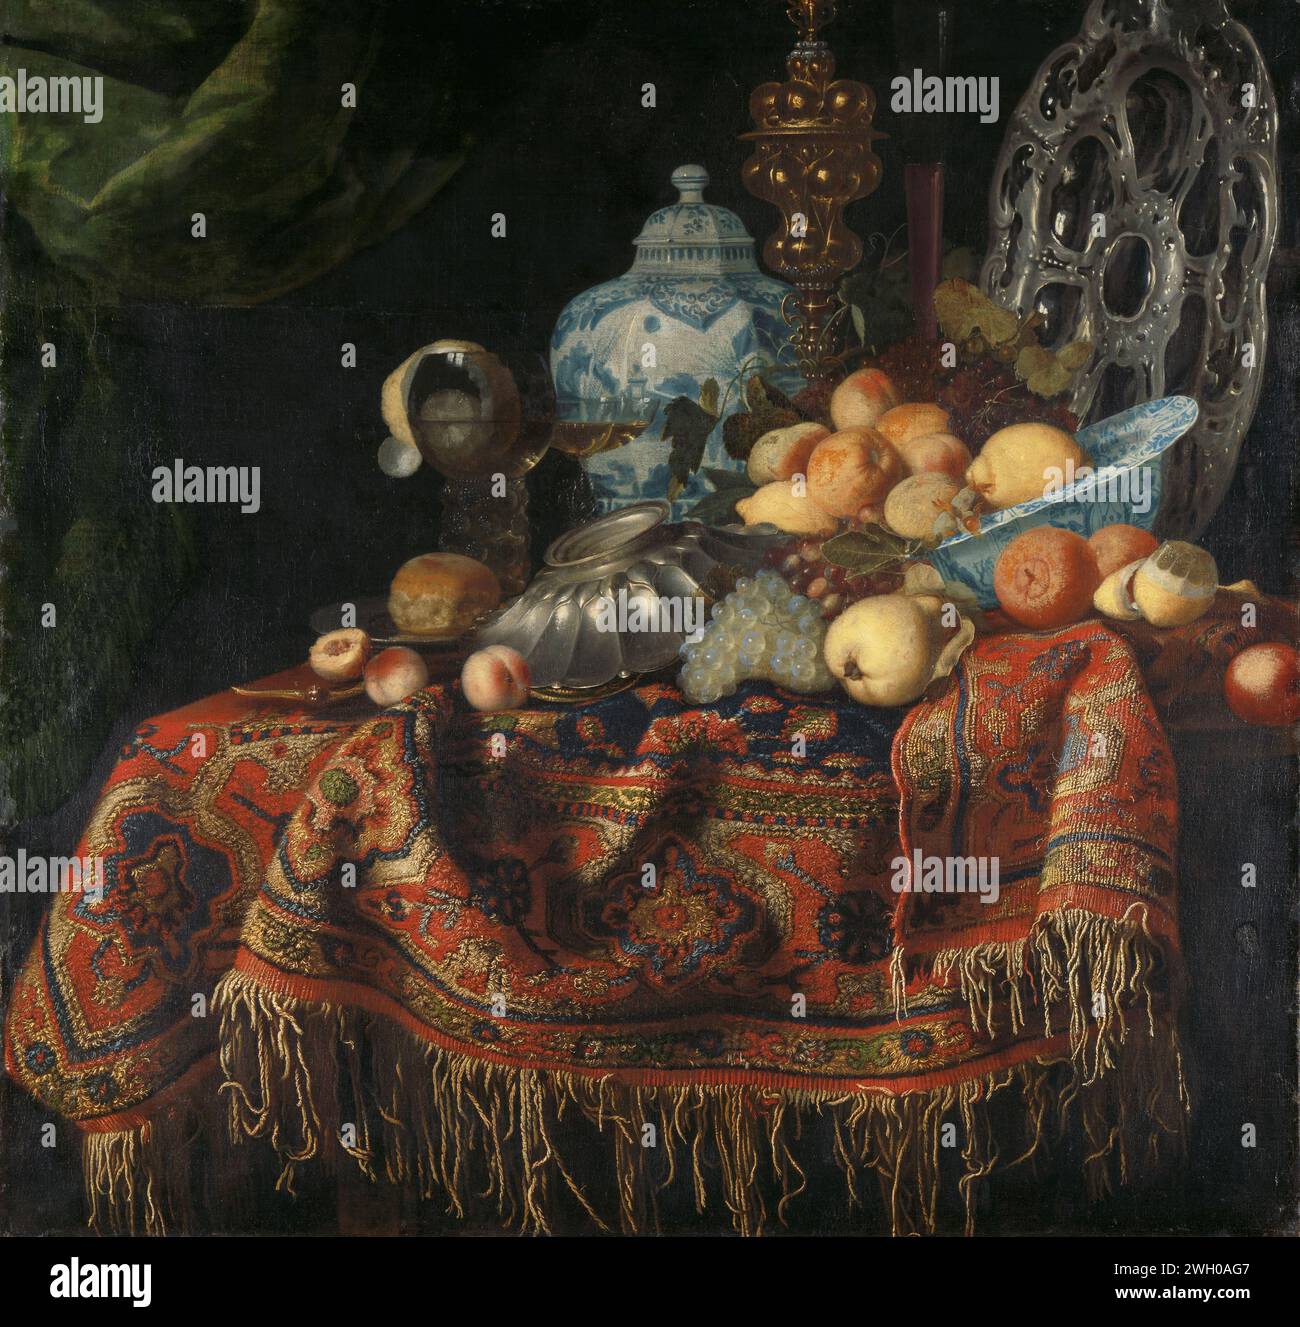 Stillleben mit Früchten, Tellern und Geschirr auf einem Putenteppich, Simon Luttichuys (zugeschrieben), 1650–1680 Gemälde Stillleben mit Früchten und Gefäßarbeiten auf einem Smyrna-Teppich. Auf einem Tisch, der mit einem orientalischen Teppich bedeckt ist, befinden sich eine Wan Li-Skala mit Äpfeln und Zitronen, silberne Schüsseln, eine goldene Vitrine, ein Brot auf einem Zinnteller, ein roemer mit Wein, in dem eine geschälte Zitrone, weitere Trauben und eine Birne enthalten sind. Auf der Rückseite befindet sich eine große Porzellanvase oder ein Topf. Nordholländische Leinwand. Ölfarbe (Lack) Tischtuch. Früchte: Zitrone. Früchte: apfel. Früchte: Pfirsich. Früchte: Traube. Lebensmittel; Stillleben von Lebensmitteln. Gelegt Stockfoto